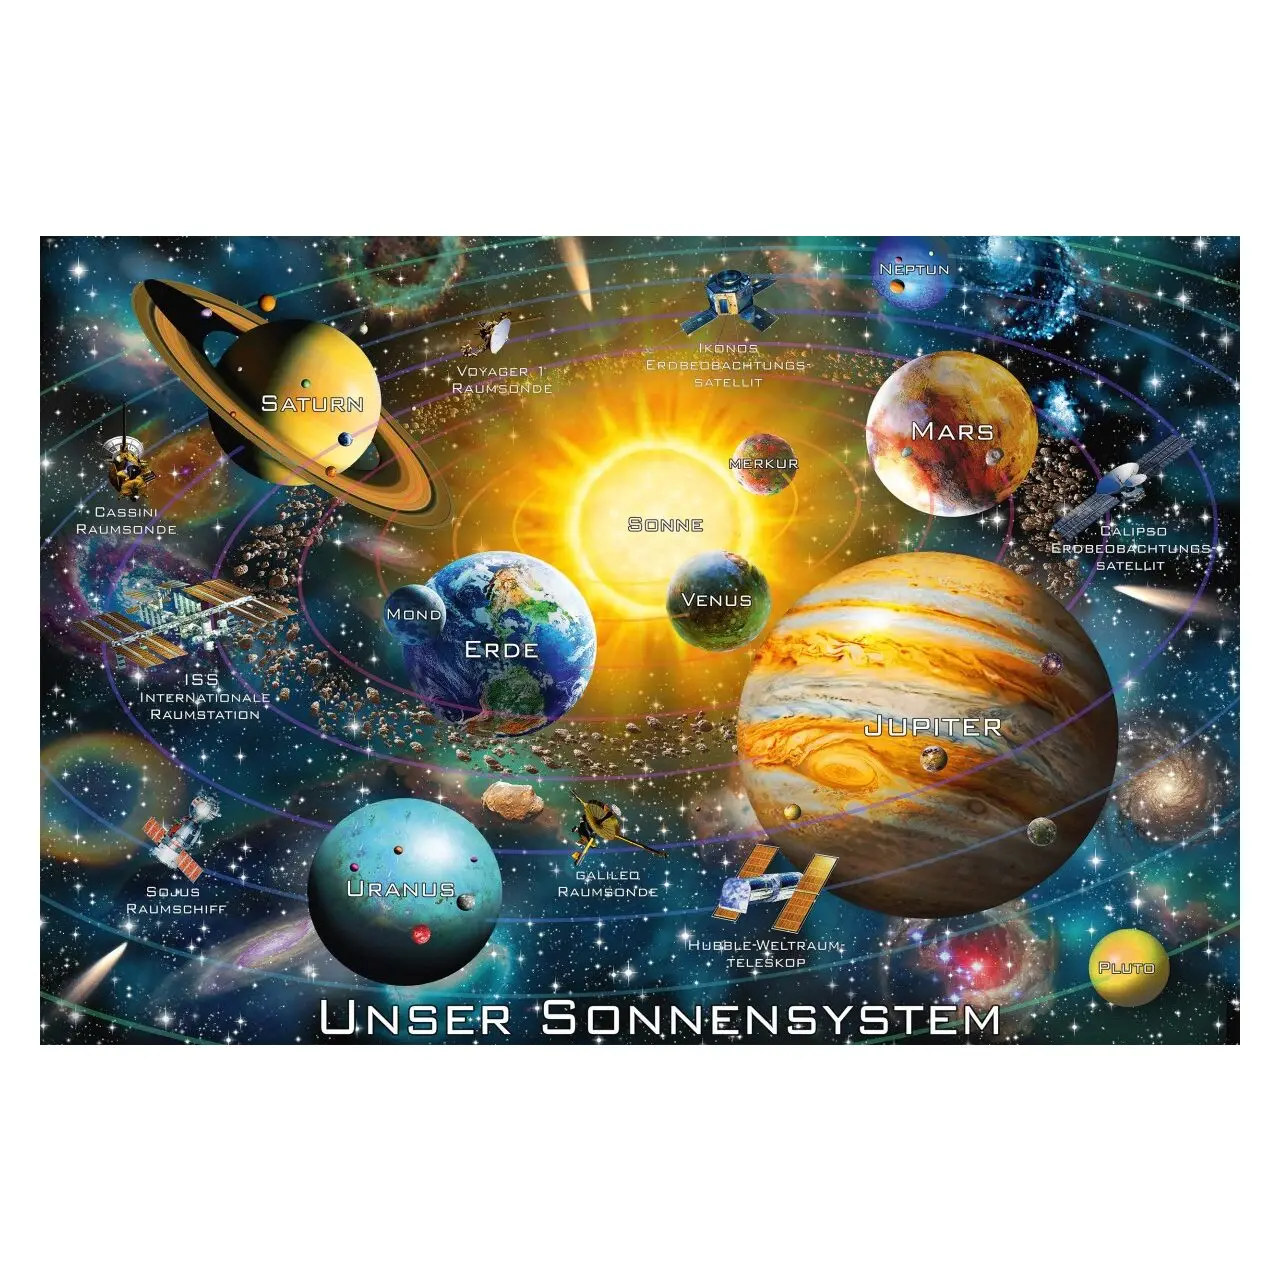 200 Sonnensystem Teile SchmidtPuzzle